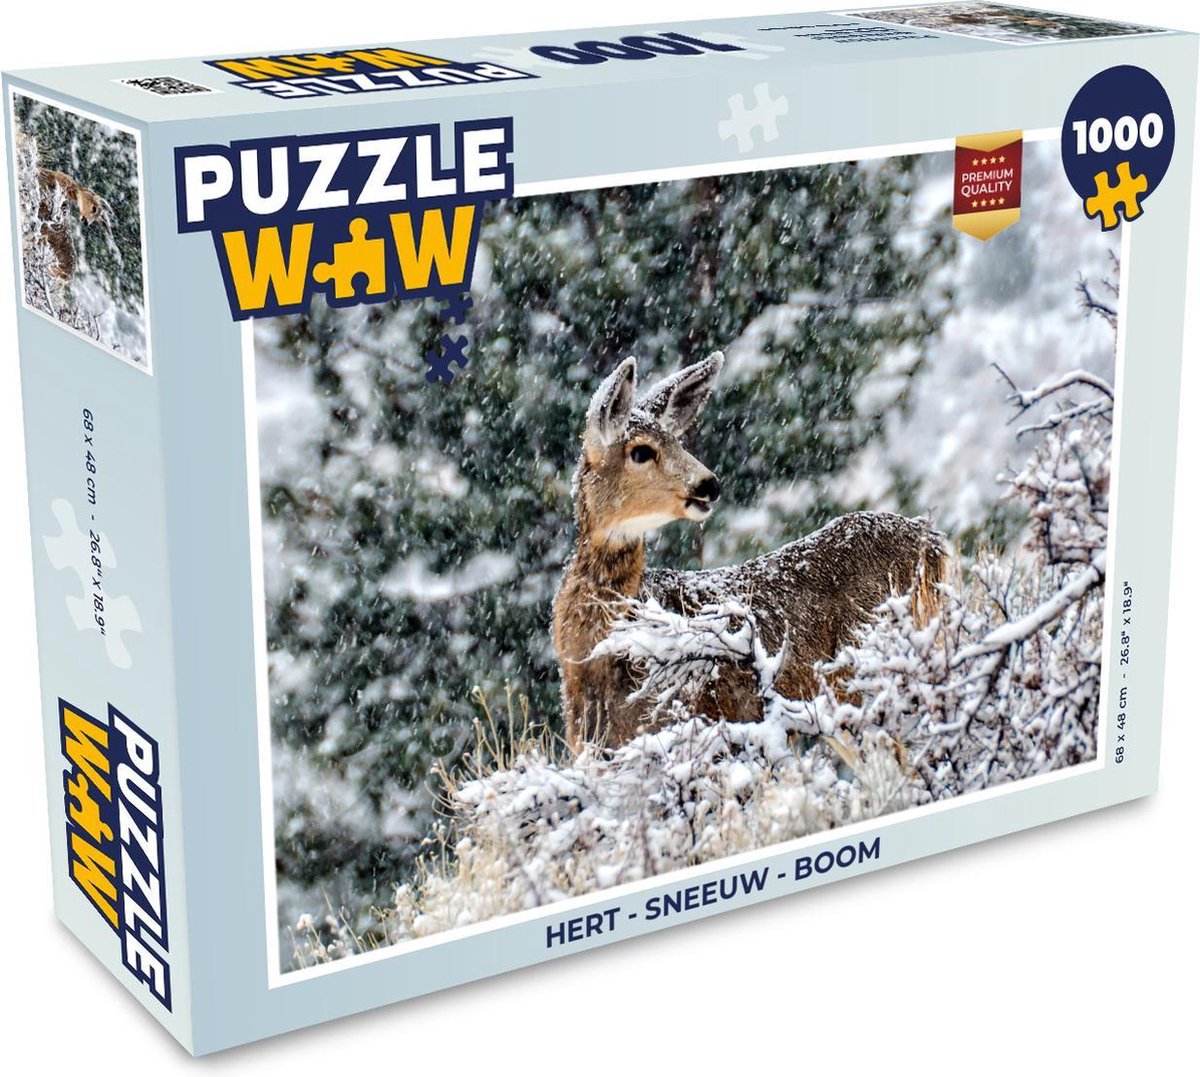 Afbeelding van product PuzzleWow  Puzzel Hert - Sneeuw - Boom - Legpuzzel - Puzzel 1000 stukjes volwassenen